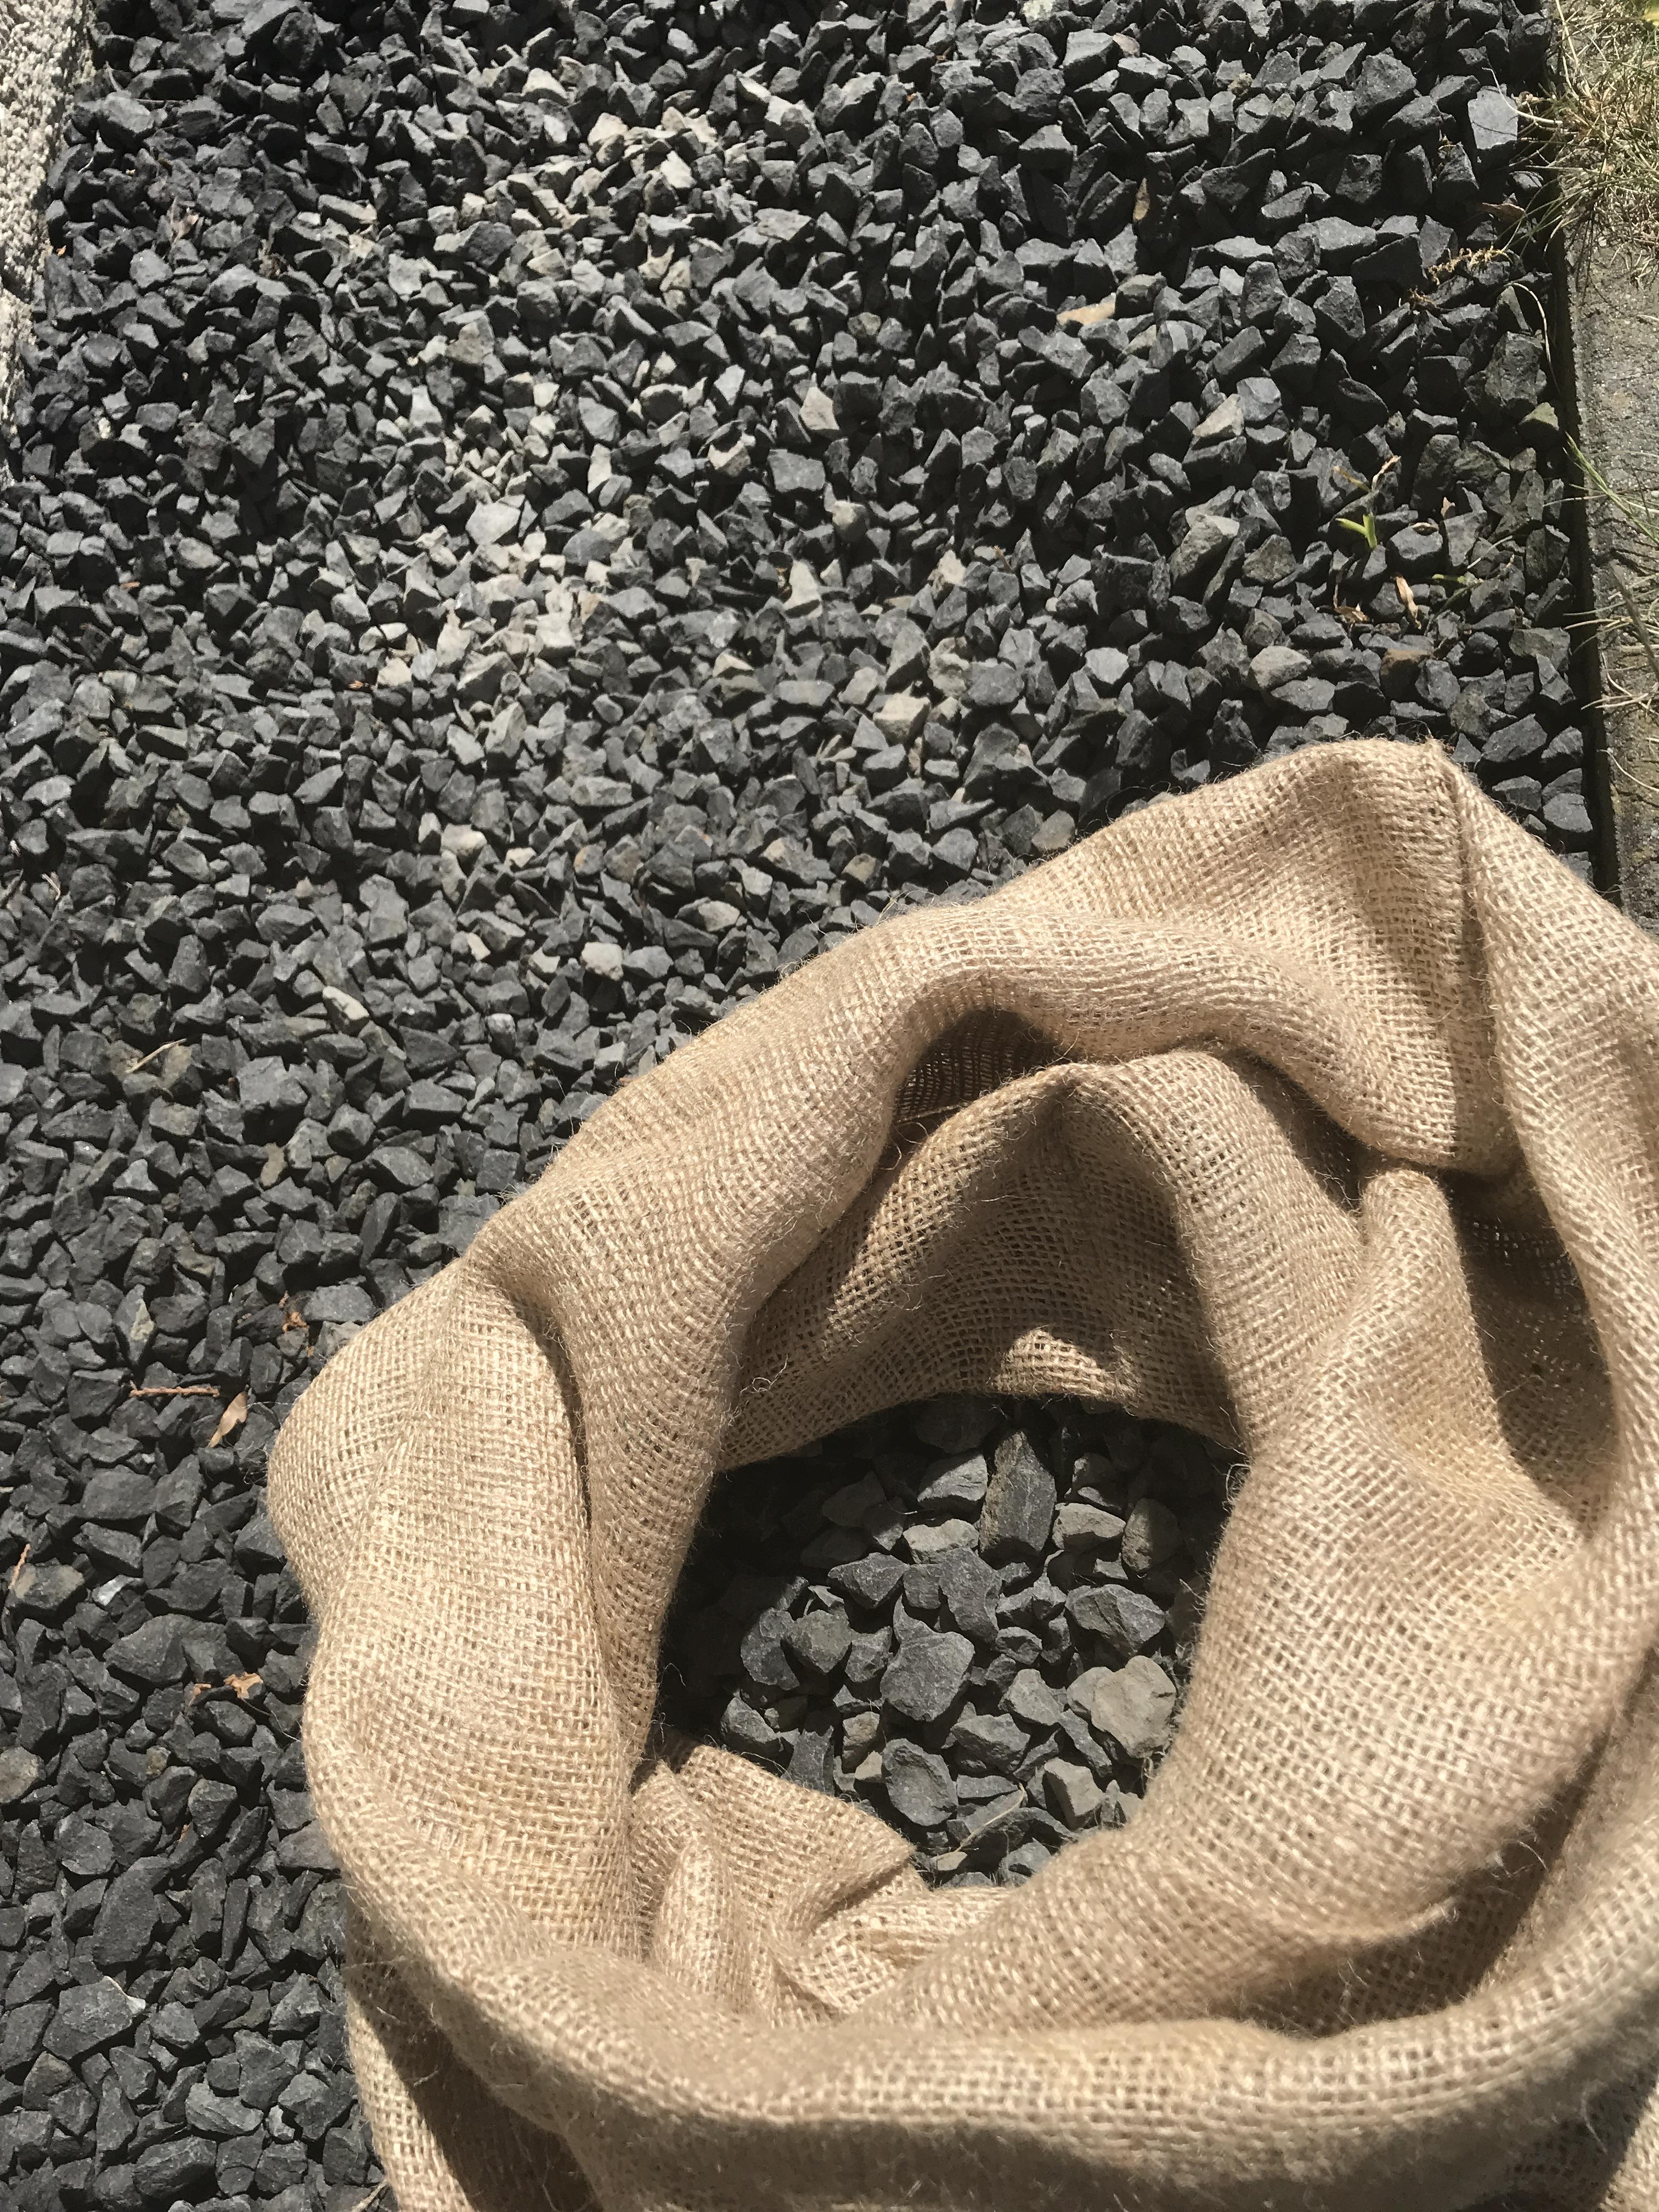 Jute zakken zonder sluitkoord 50 x 85 cm (per stuk) gebruik: Om de kiezel stenen van ons huis tijdelijk in op de slaan, zodat we die straks weer in onze tuin kunnen gebruiken